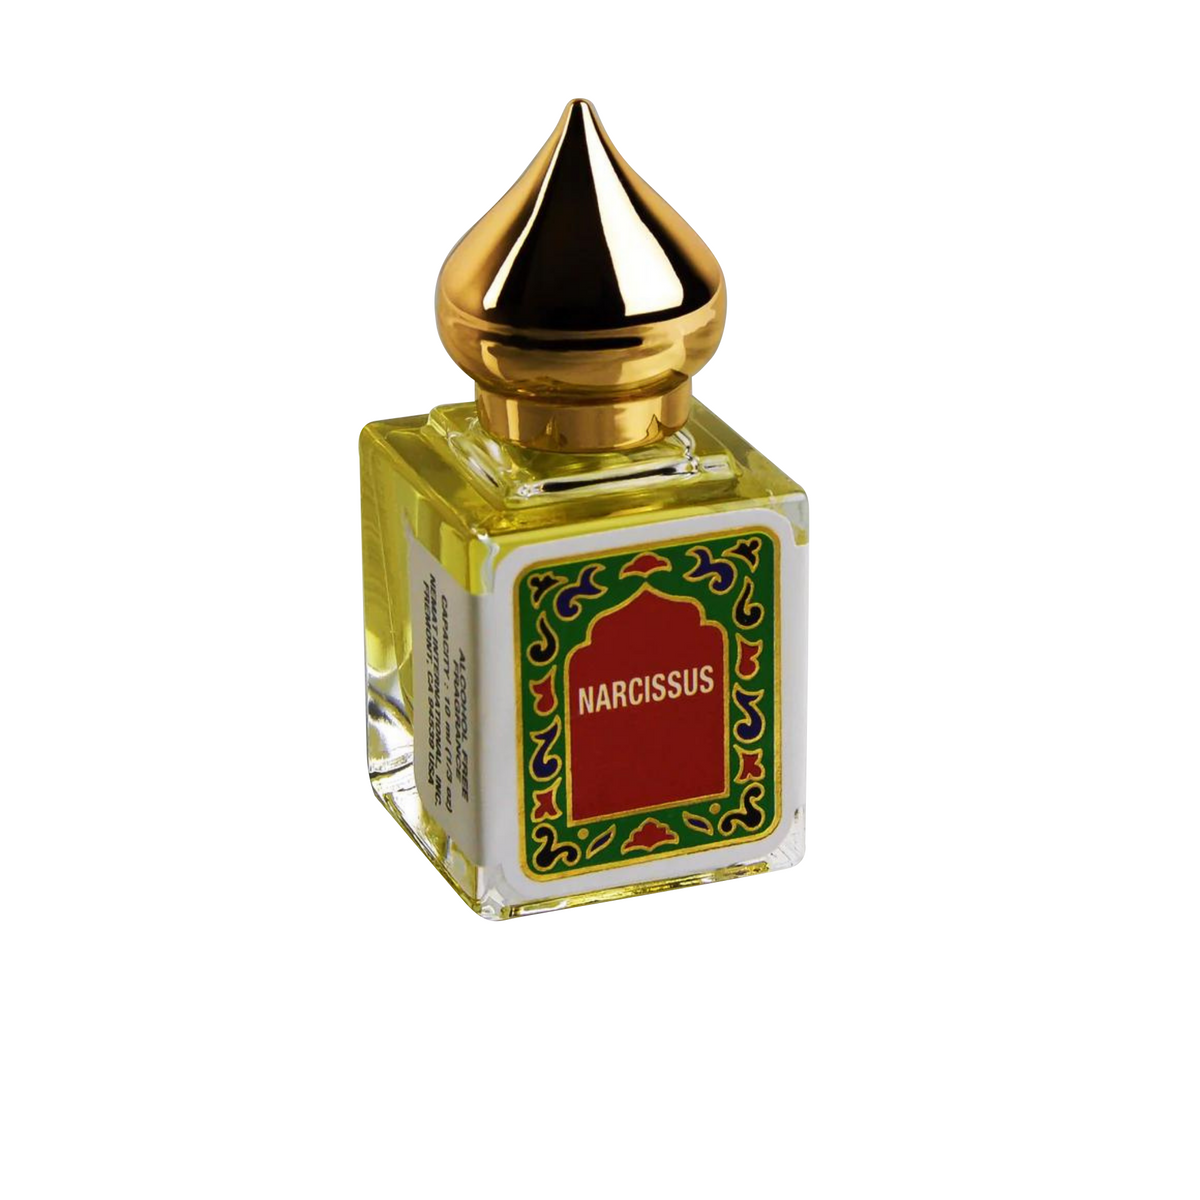 Primary image of Narcissus Fragrance Minaret Cap